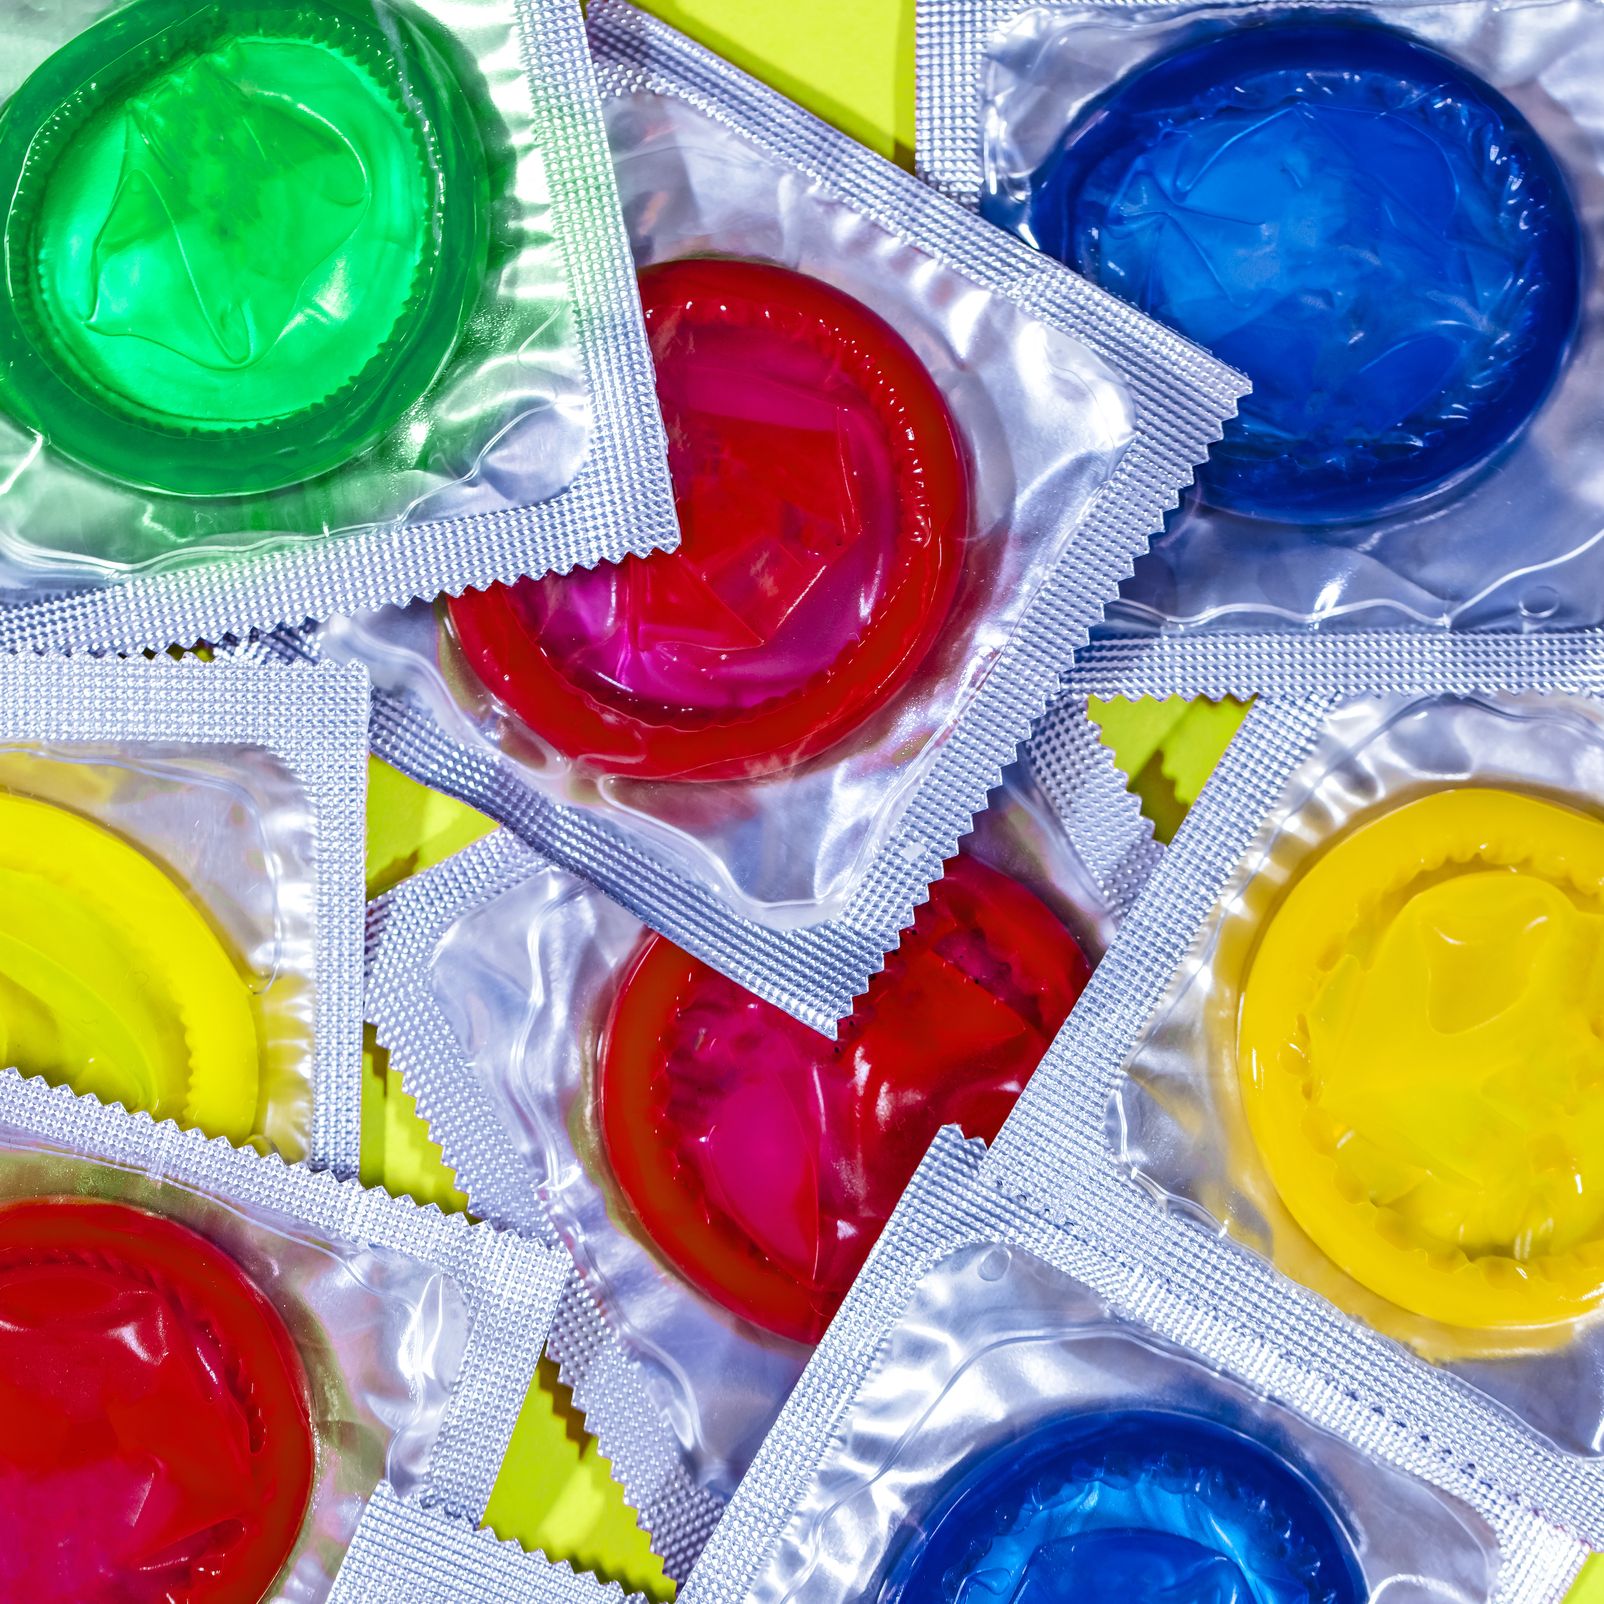 Watch a Urologist Bust 7 Myths About Condoms